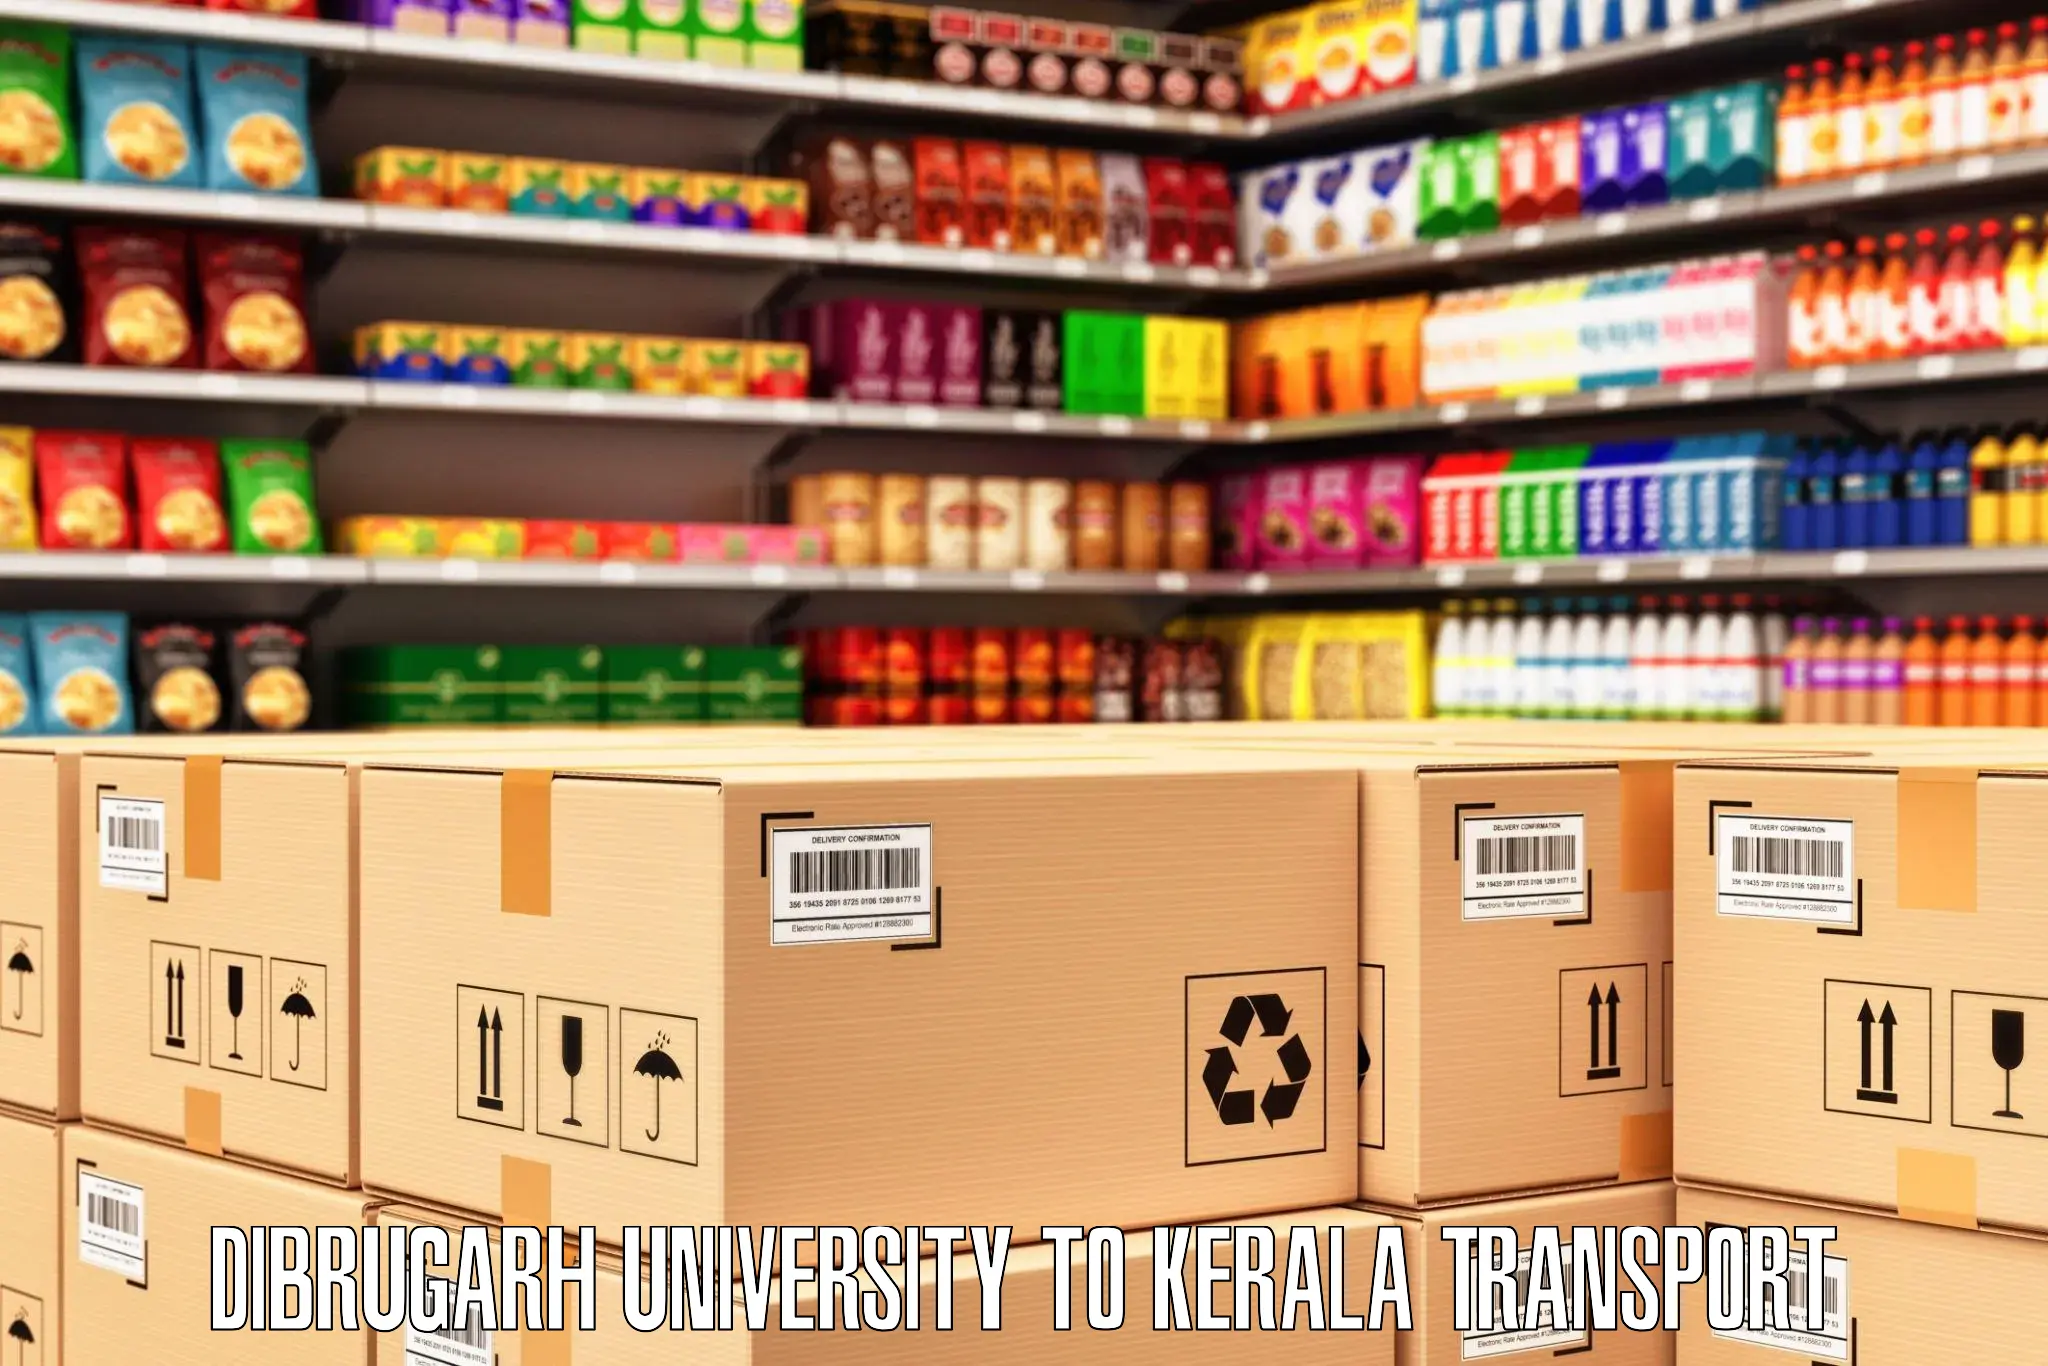 Truck transport companies in India Dibrugarh University to Ernakulam